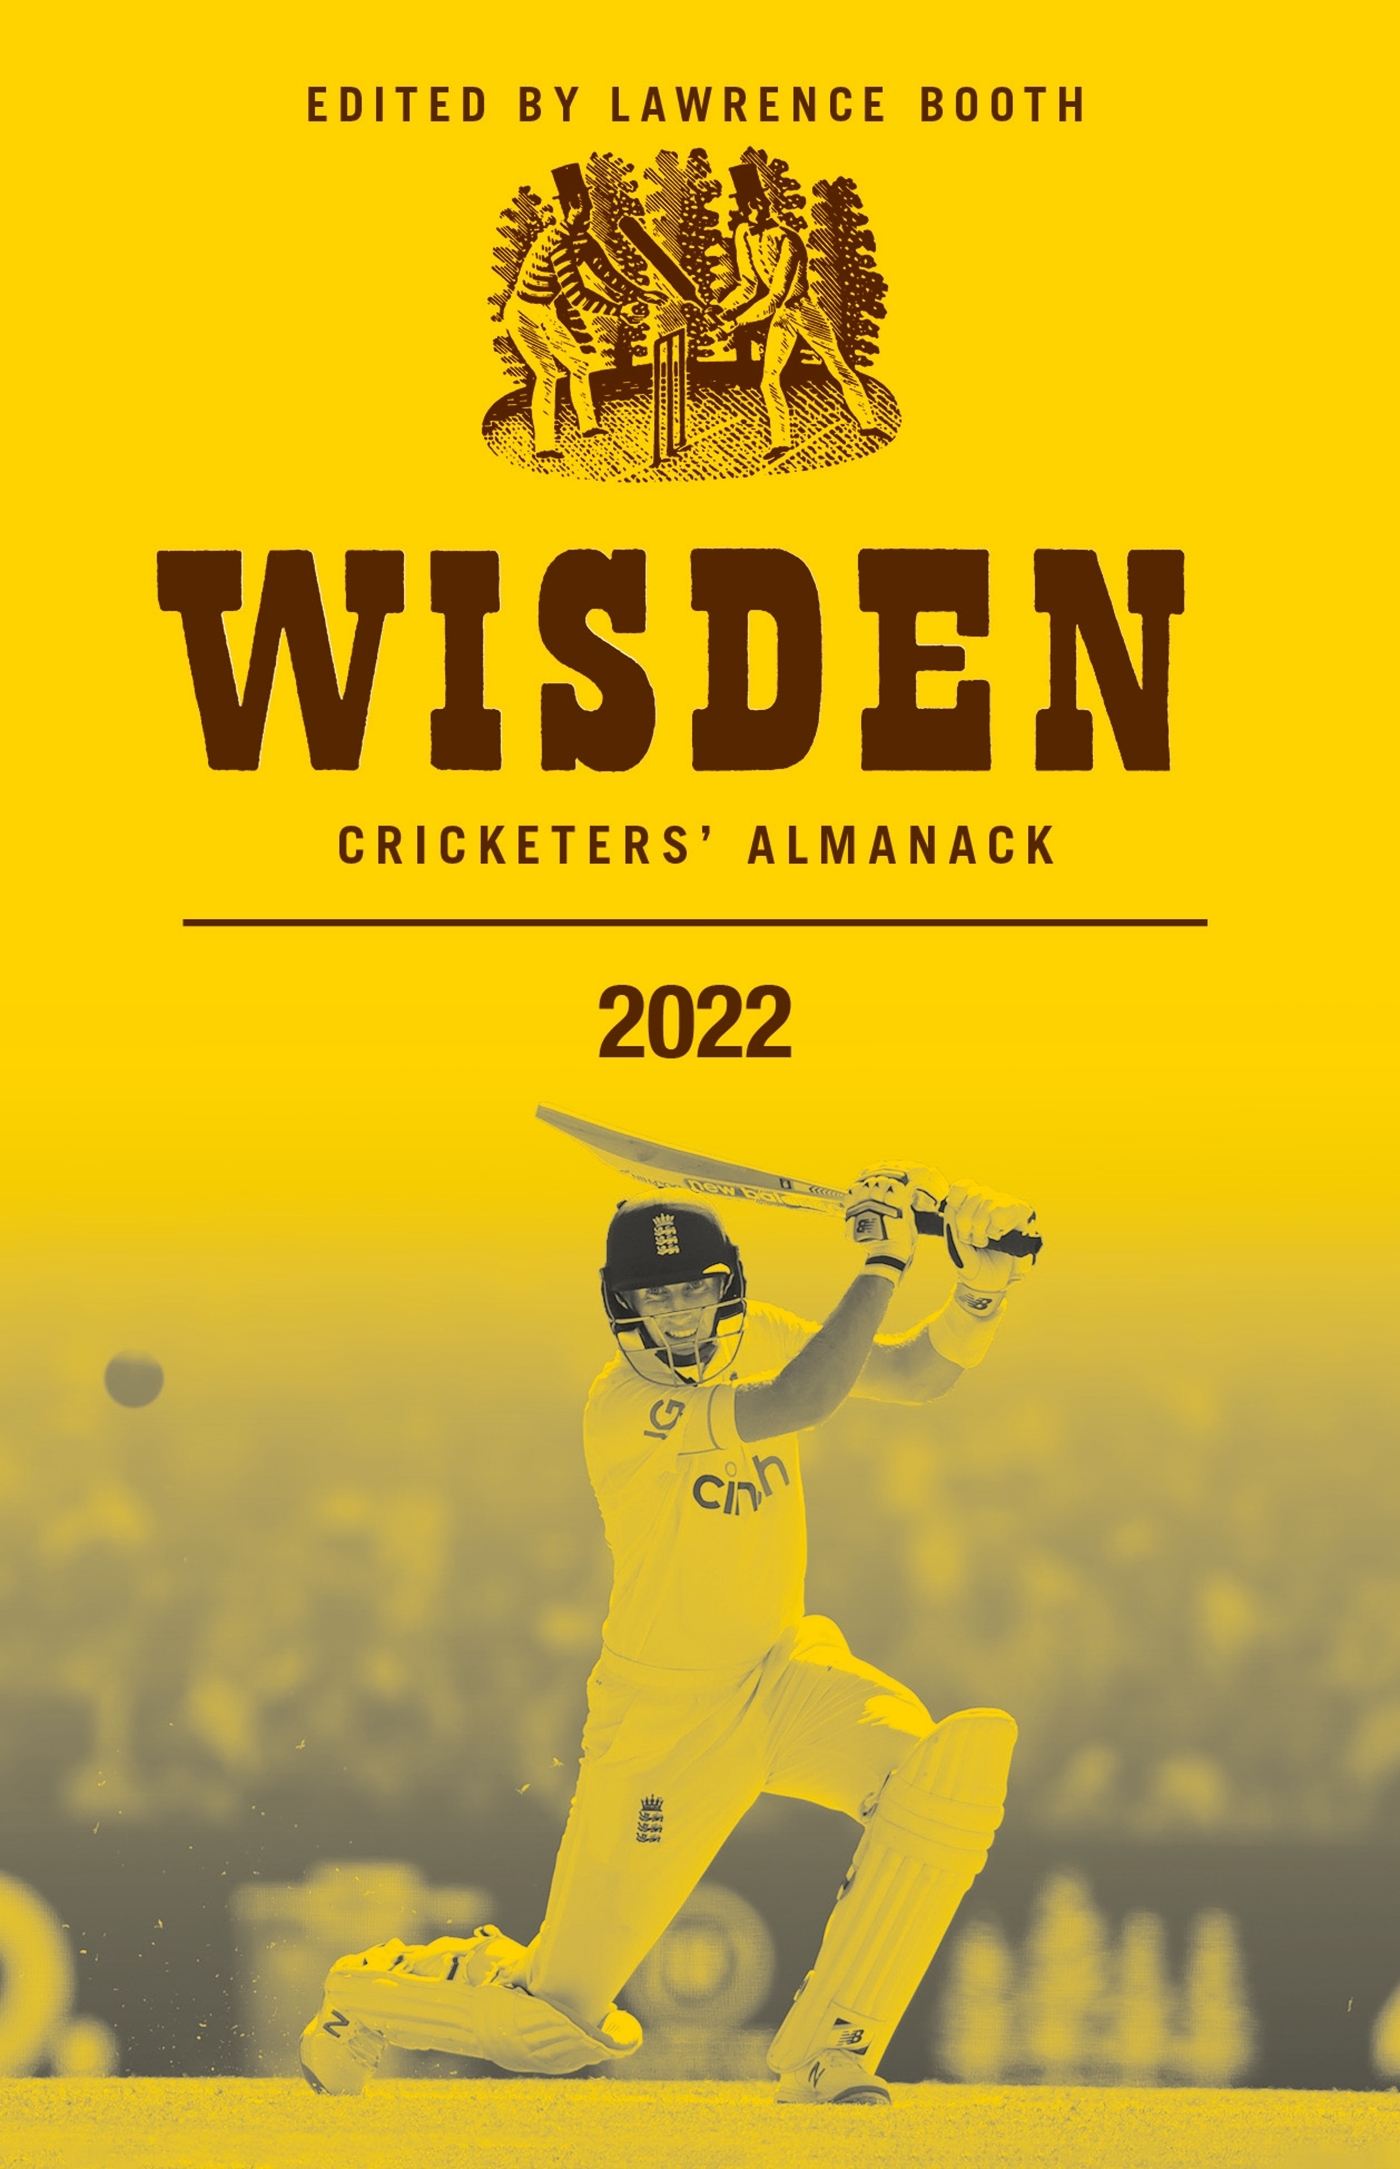 Wisden Cricketers' Almanack 2022 (Wisden/Bloomsbury Publishing)